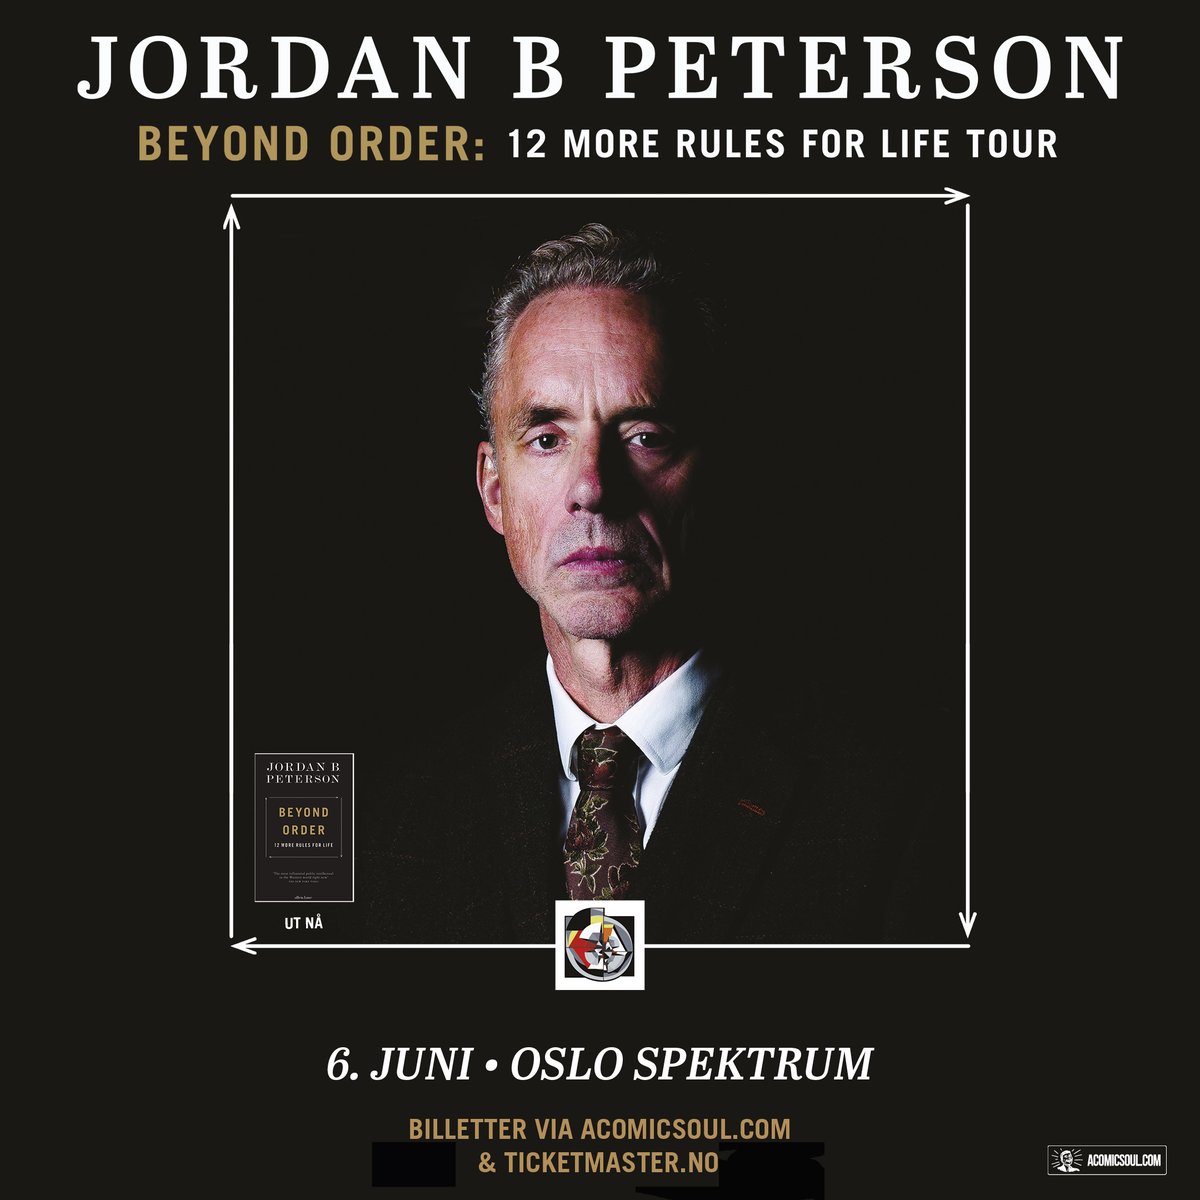 Velkommen til en aften av de sjeldne med Dr. Jordan B. Peterson og hans utfordrende teorier og tanker, mandag 6. juni 2022 i Oslo Spektrum!bit.ly/3IcbVVQ @acomicsoul, @ticketmasterno.